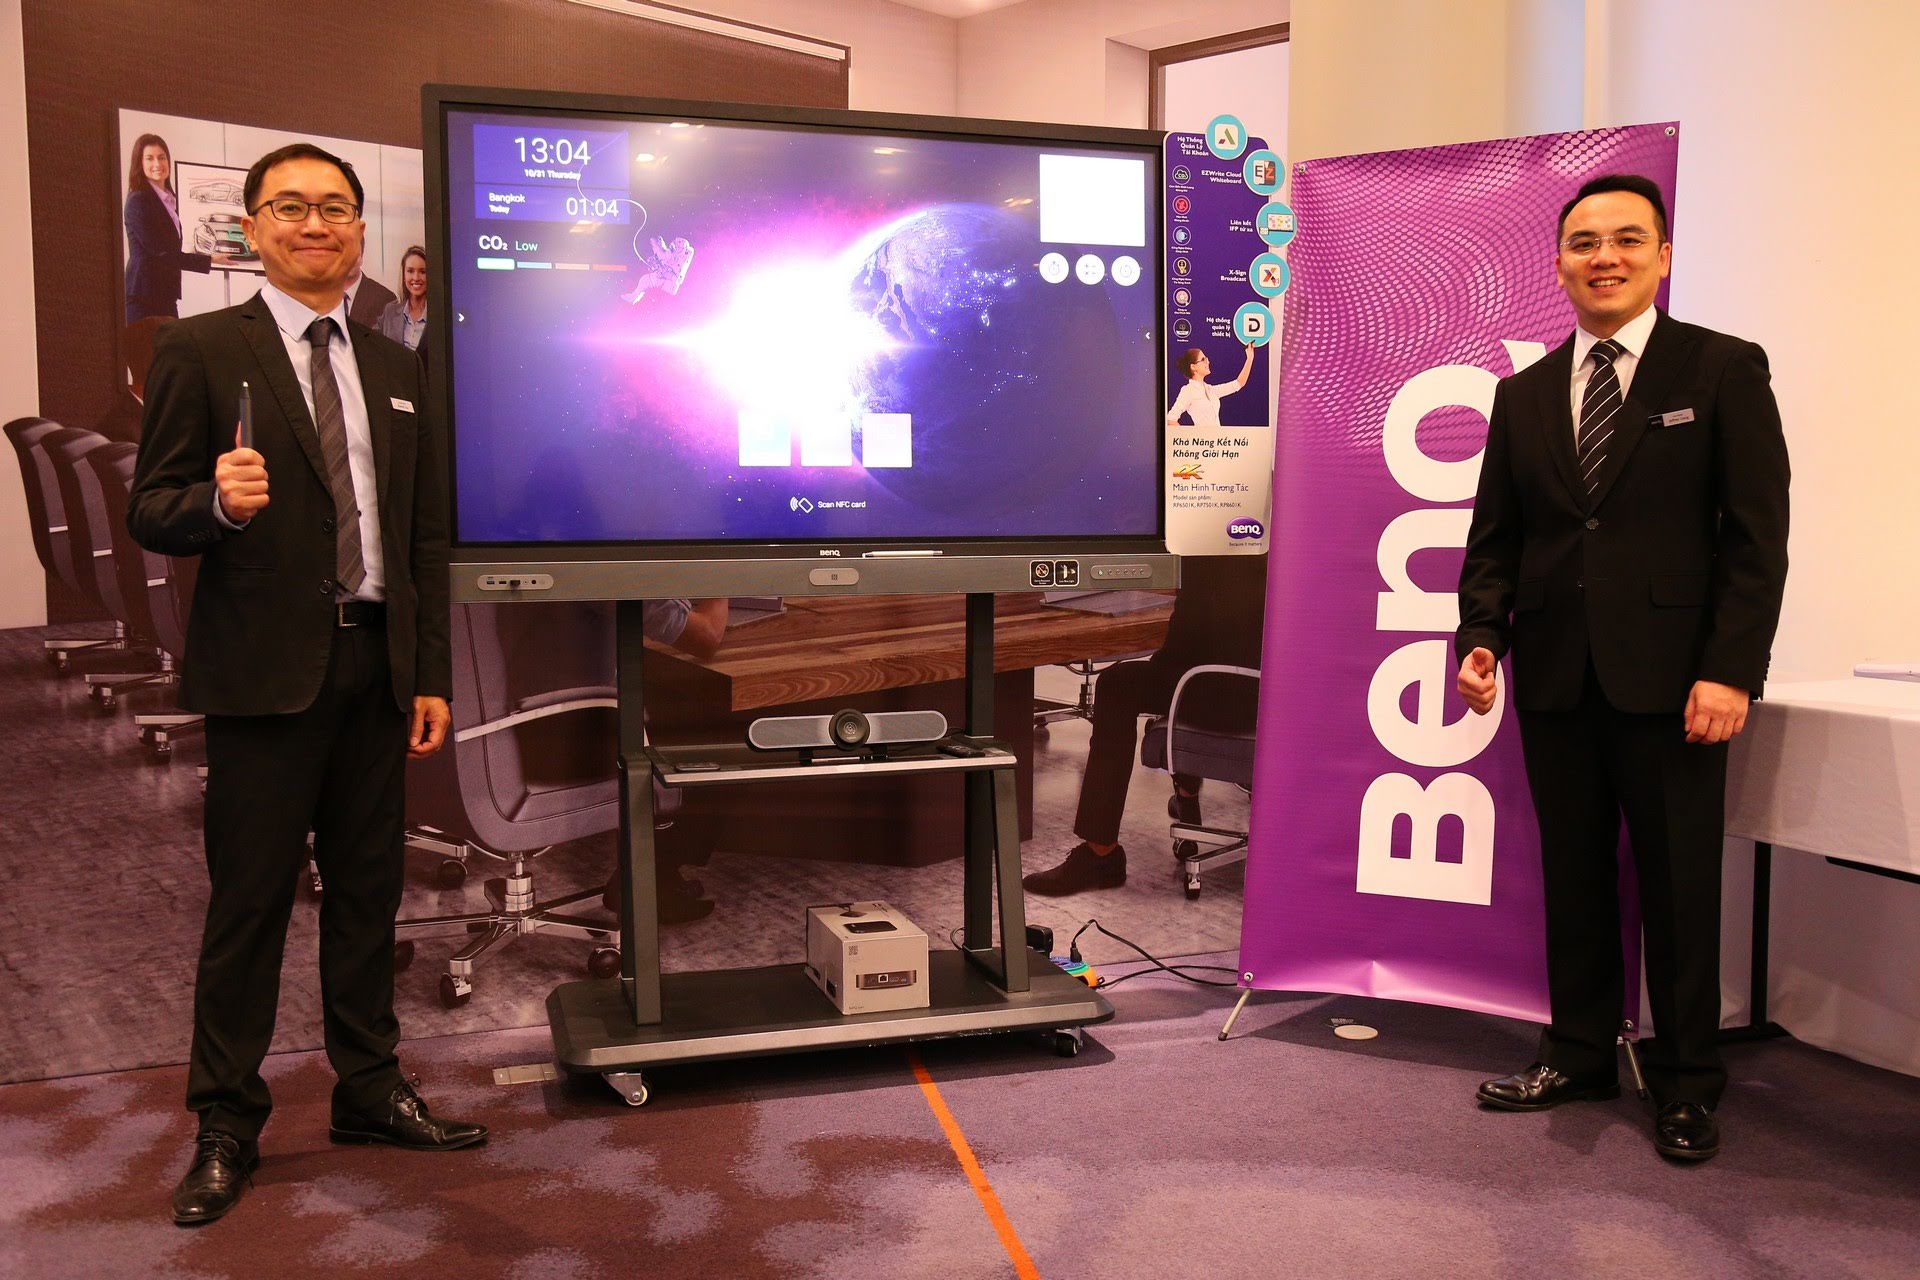 BenQ ra mắt máy chiếu thông minh mang tính cách mạng, tạo điều kiện cho môi trường giao tiếp kinh doanh theo xu hướng BYOD